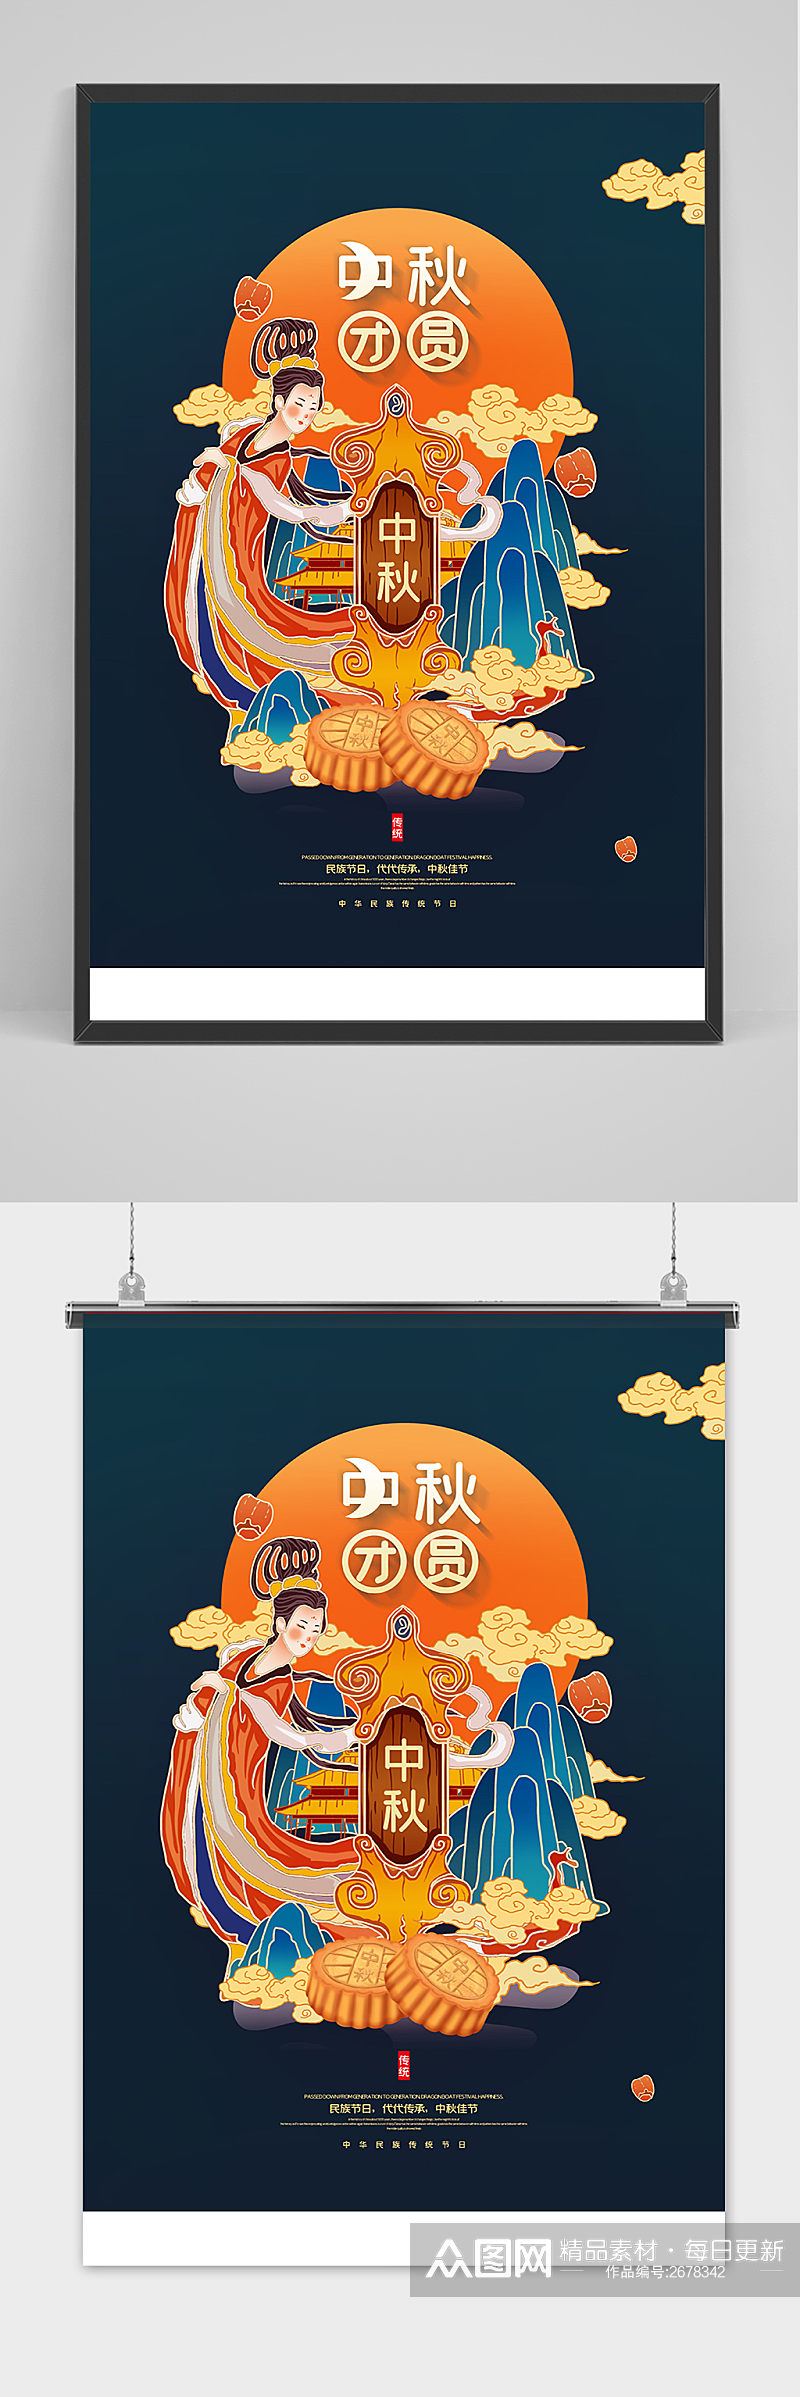 古典简洁中国风唯美中秋节海报素材